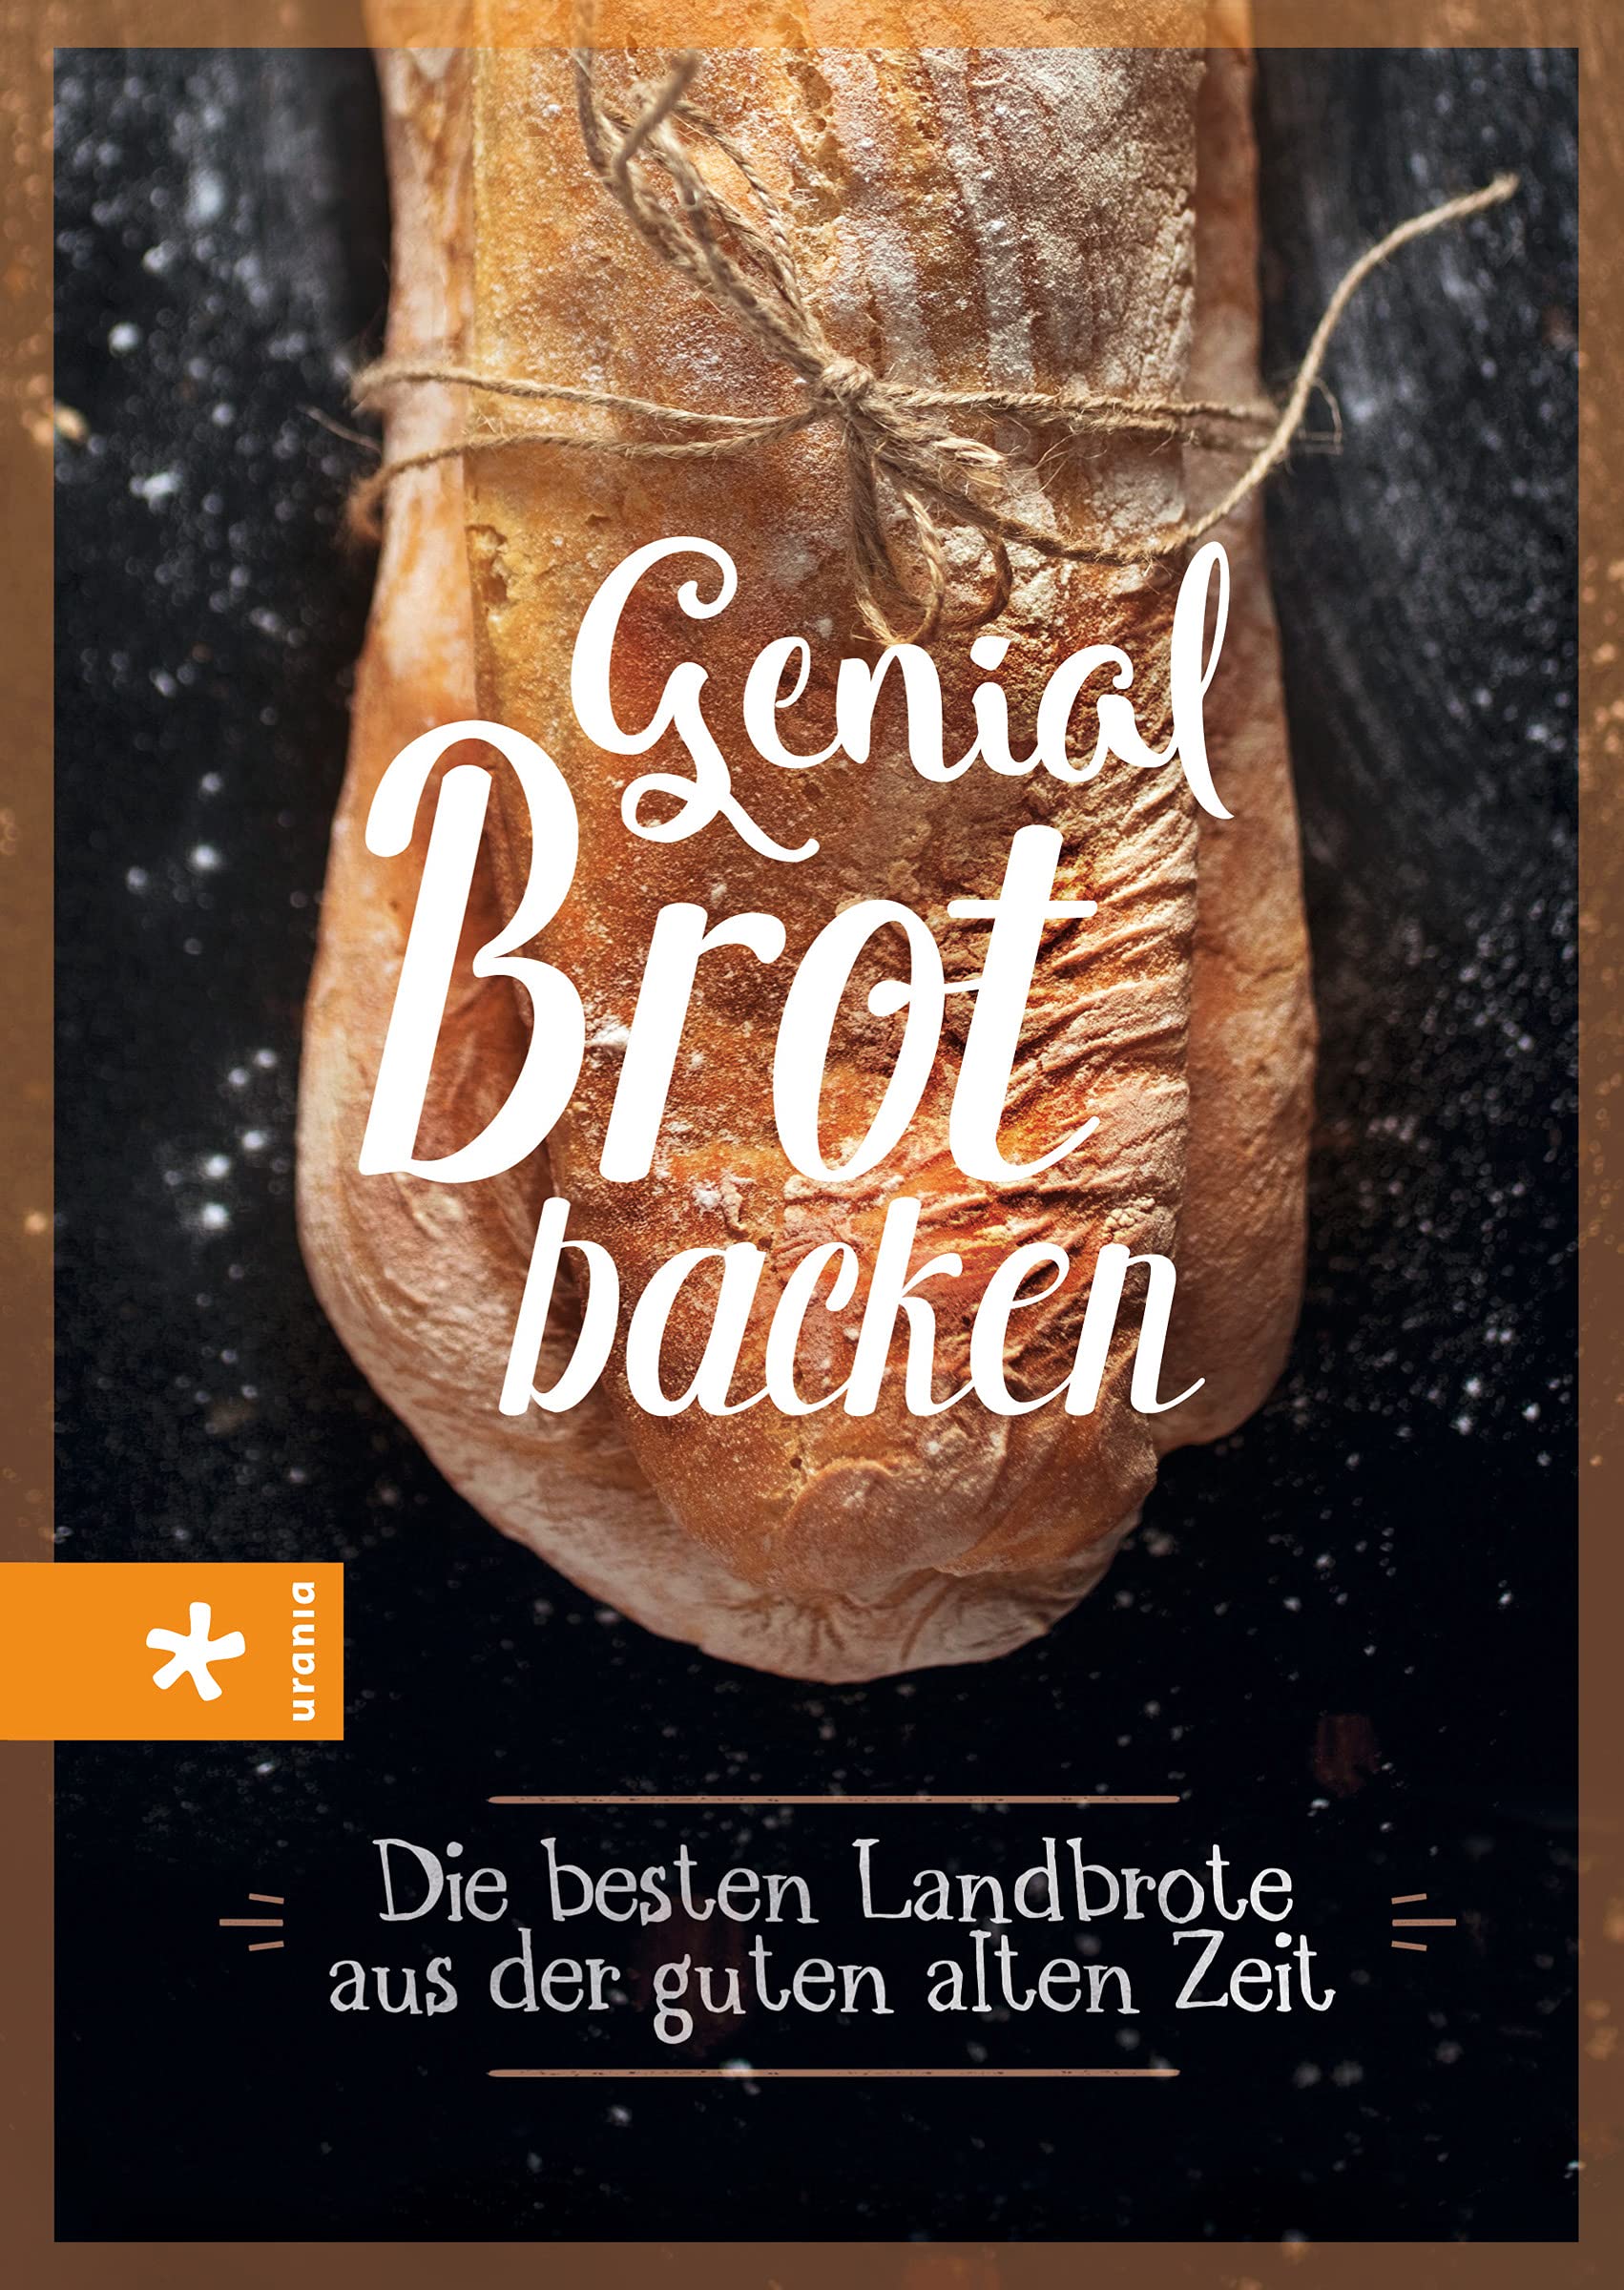 Genial Brot backen: Die besten Landbrote aus der guten alten Zeit (Altes Wissen)